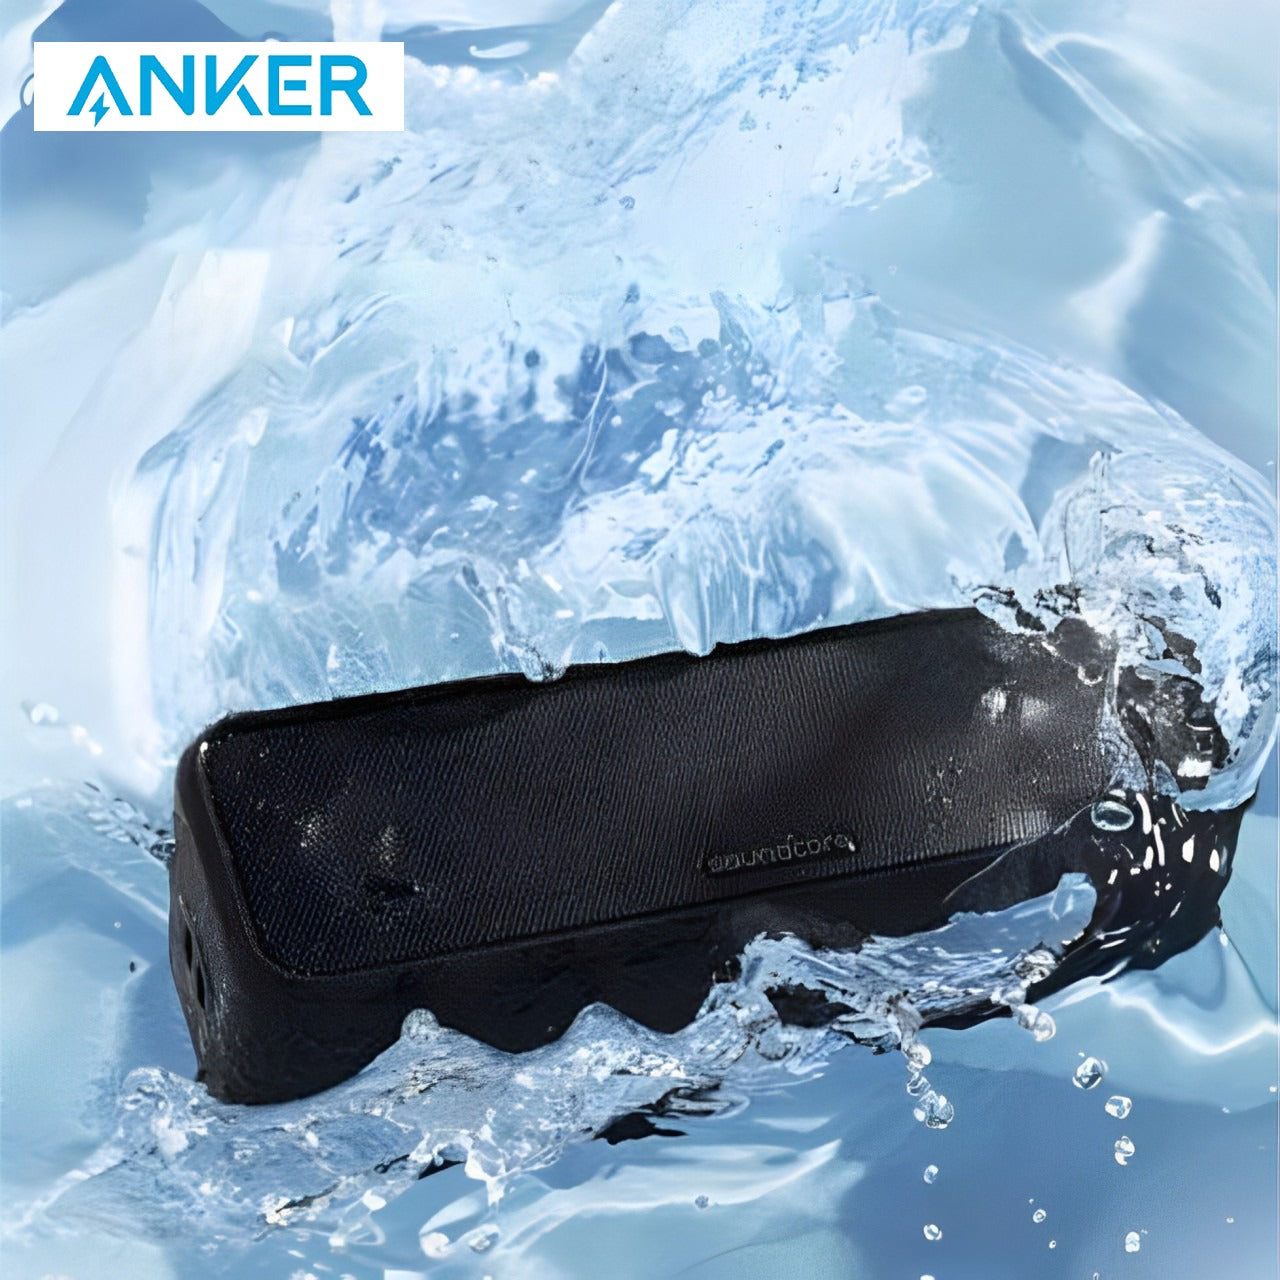 ANKER Soundcore 3 Portable Waterproof Bluetooth Speaker.